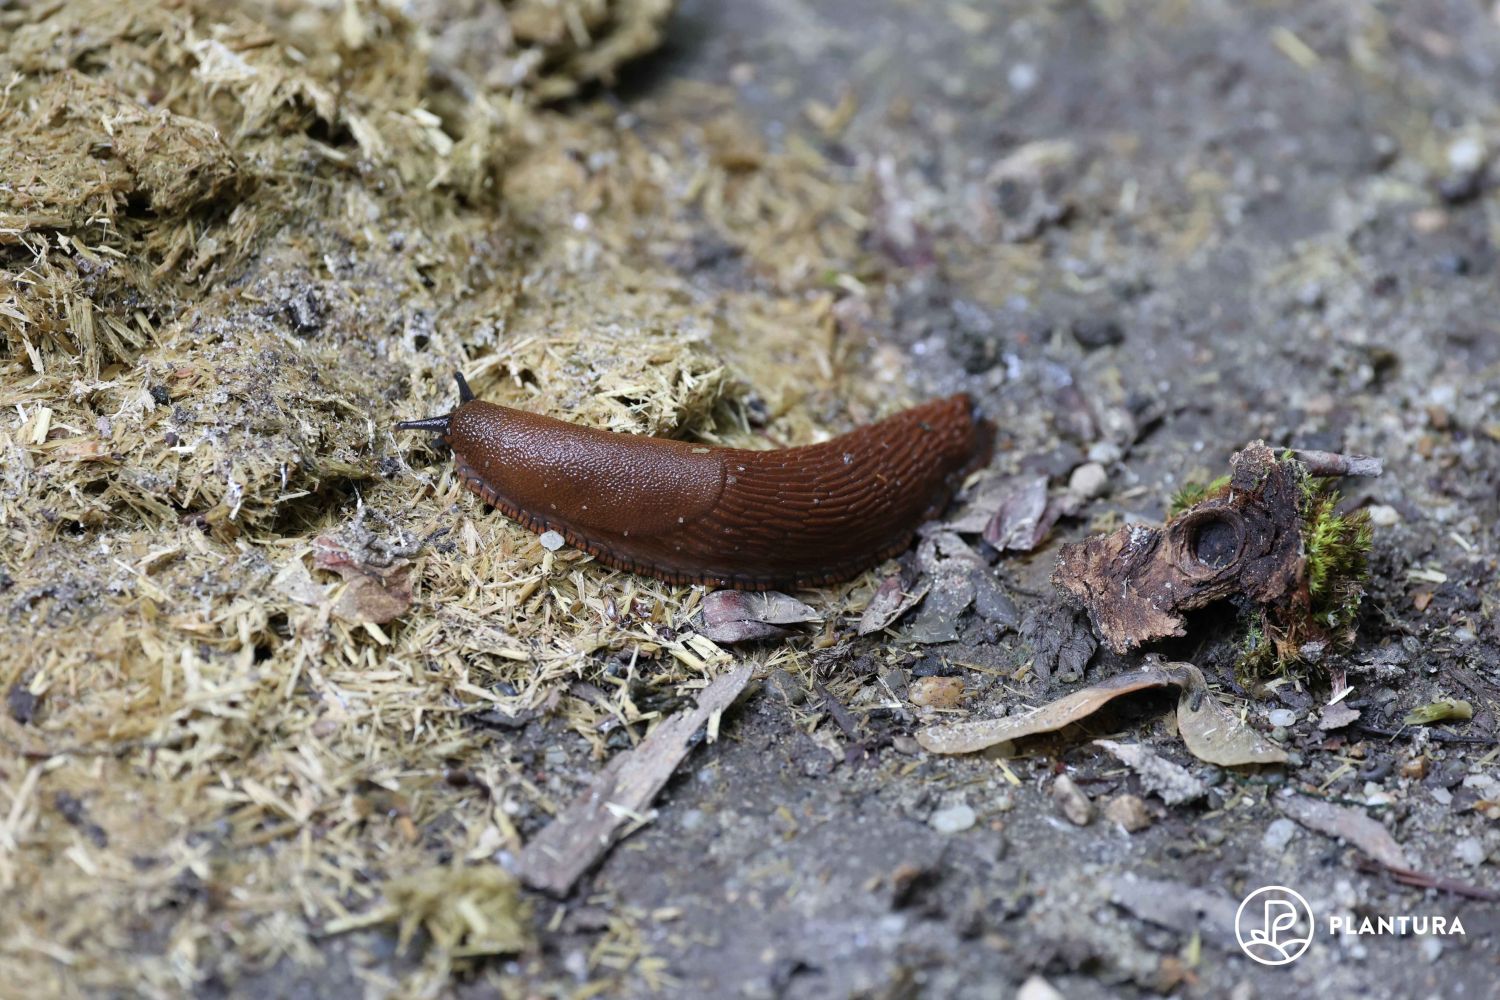 https://plantura.garden/uk/wp-content/uploads/sites/2/2022/08/how-to-get-rid-of-slugs.jpg